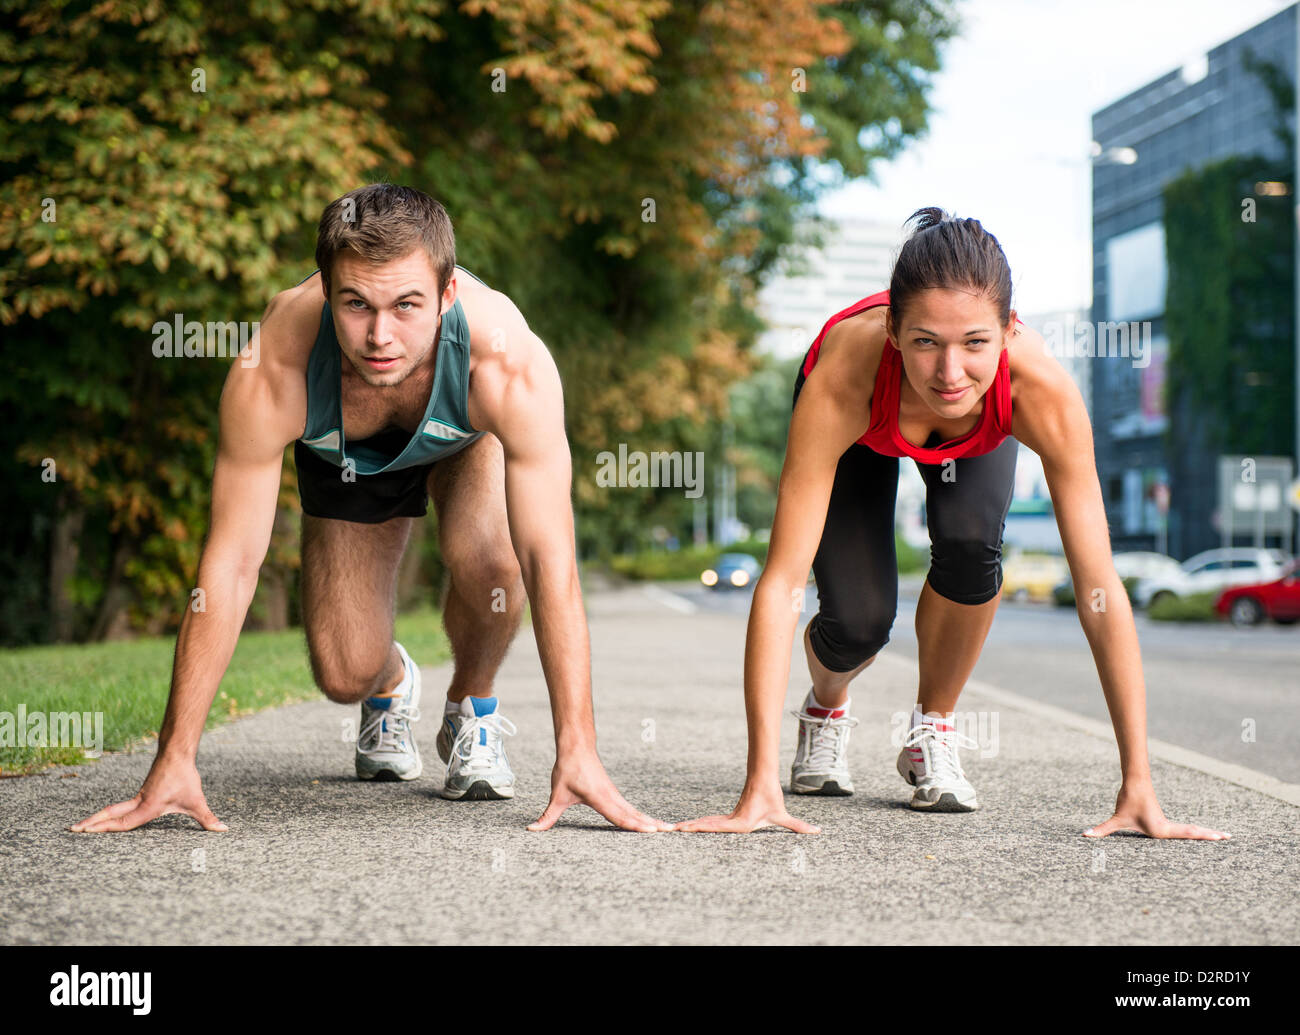 Junge sport paar ab Position vorbereitet zu konkurrieren und laufen Stockfoto